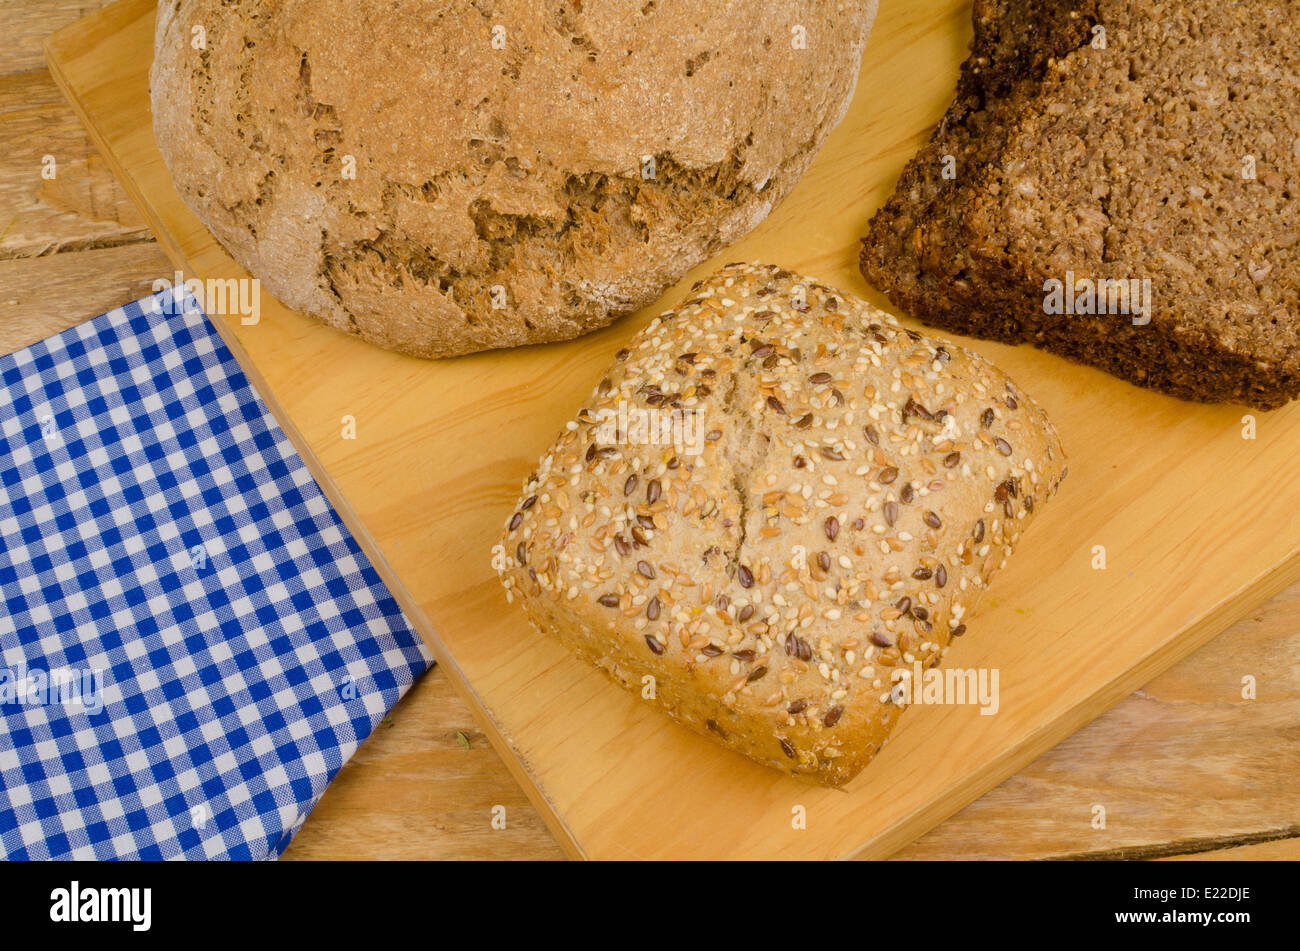 Différents types de pain de blé entier allemand Banque D'Images